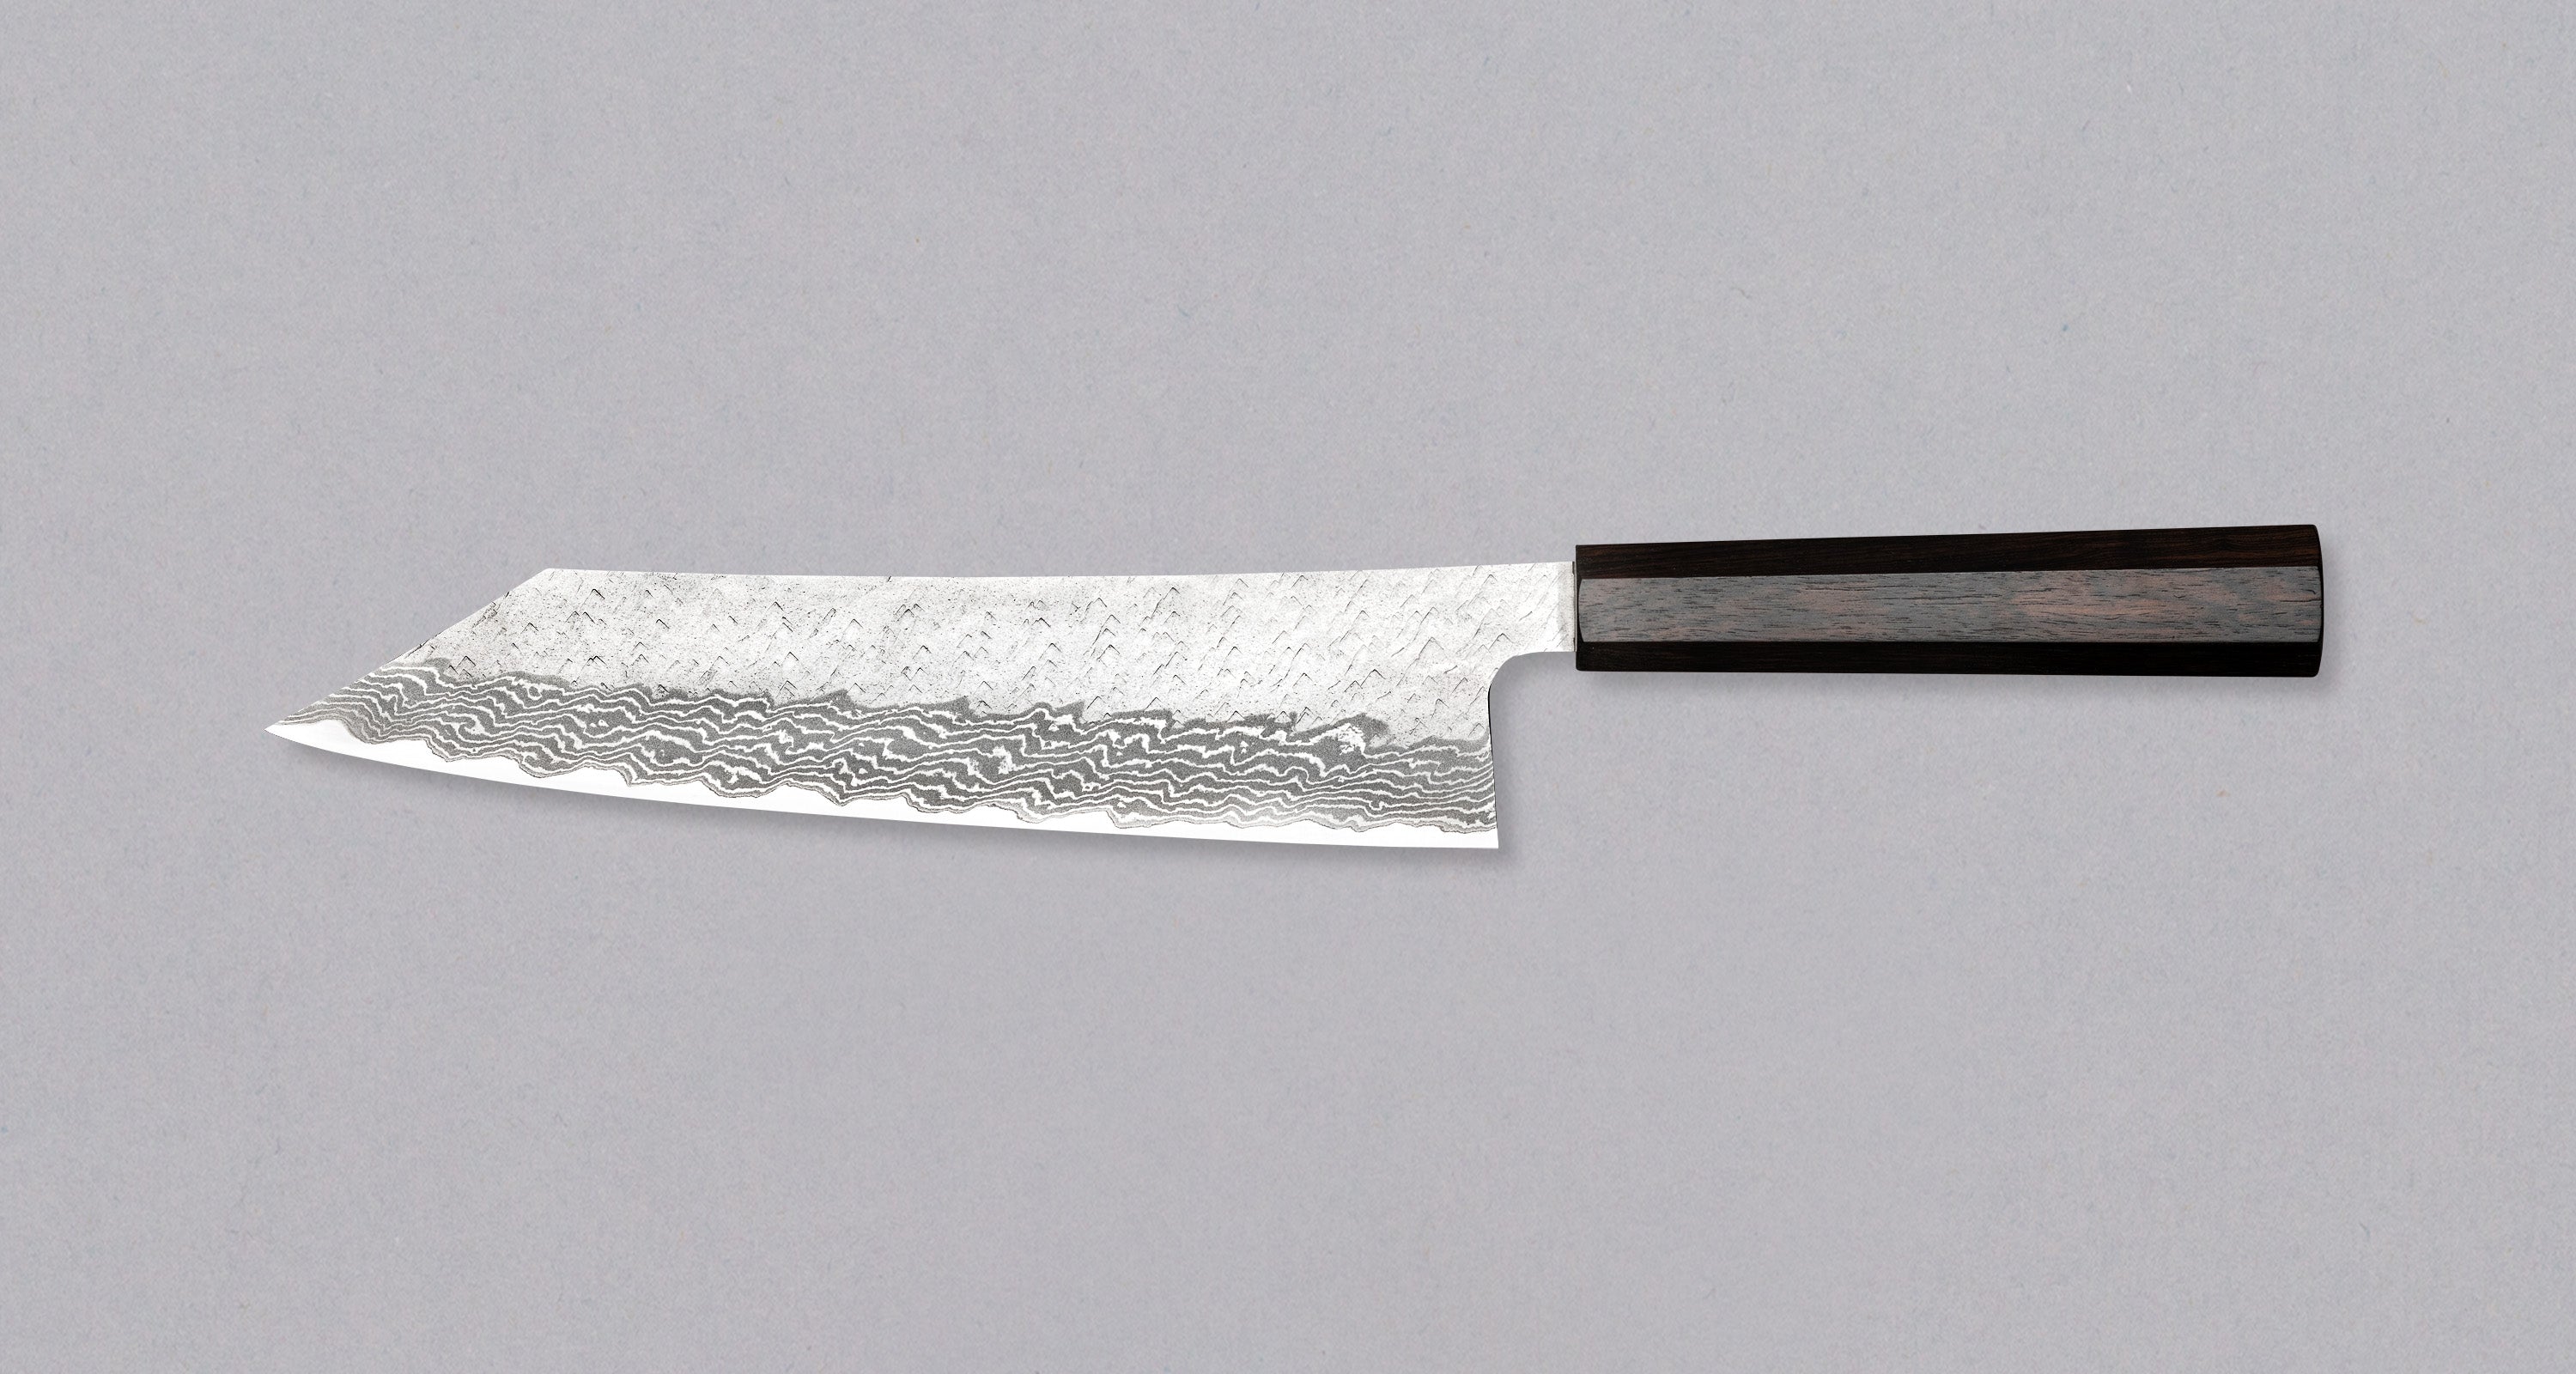 Cómo hacer una funda de cuchillo de cuero: guía paso a paso.